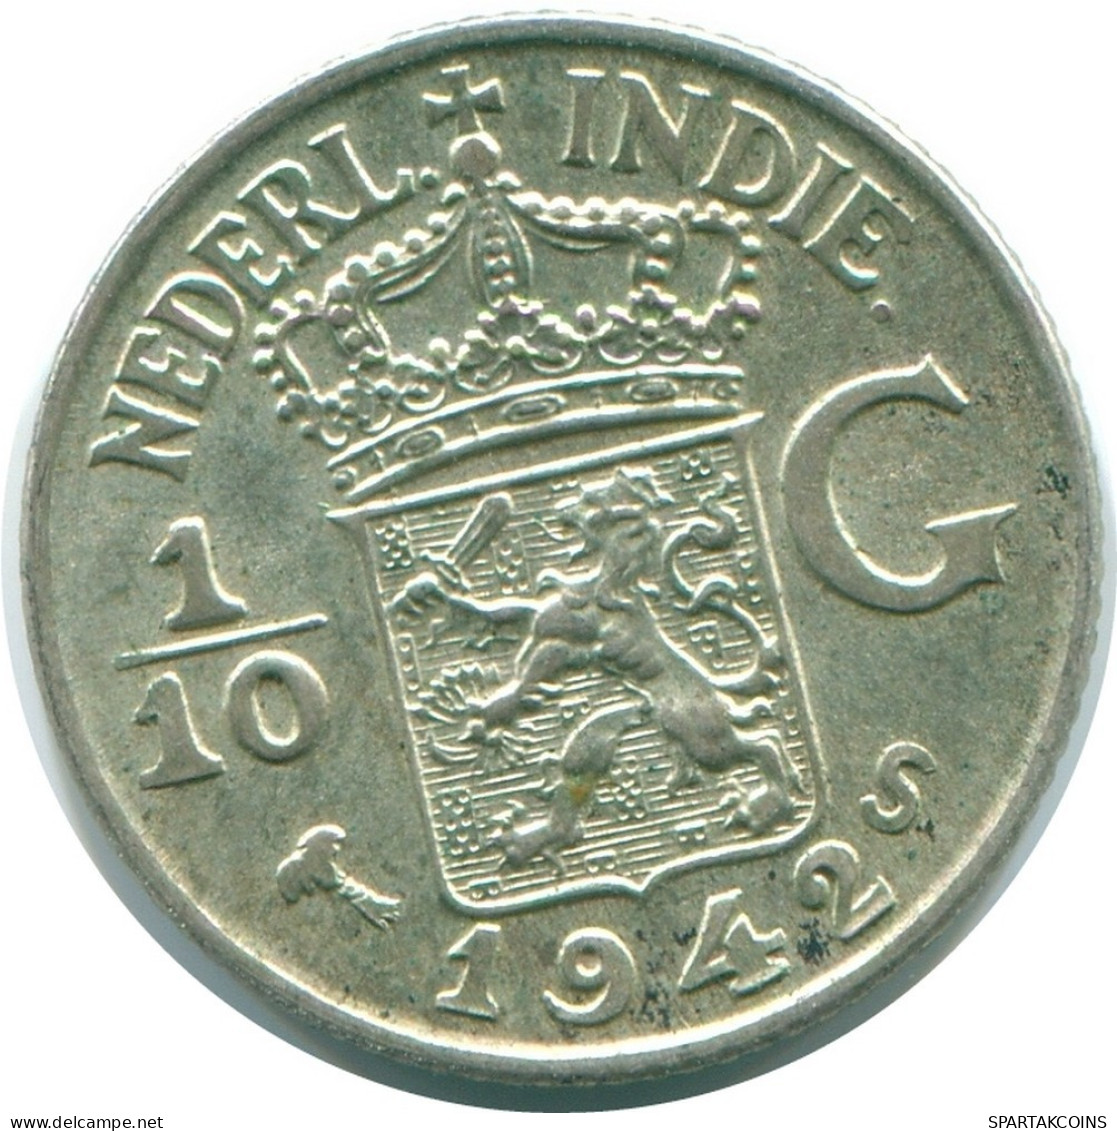 1/10 GULDEN 1942 NETHERLANDS EAST INDIES SILVER Colonial Coin #NL13859.3.U.A - Niederländisch-Indien